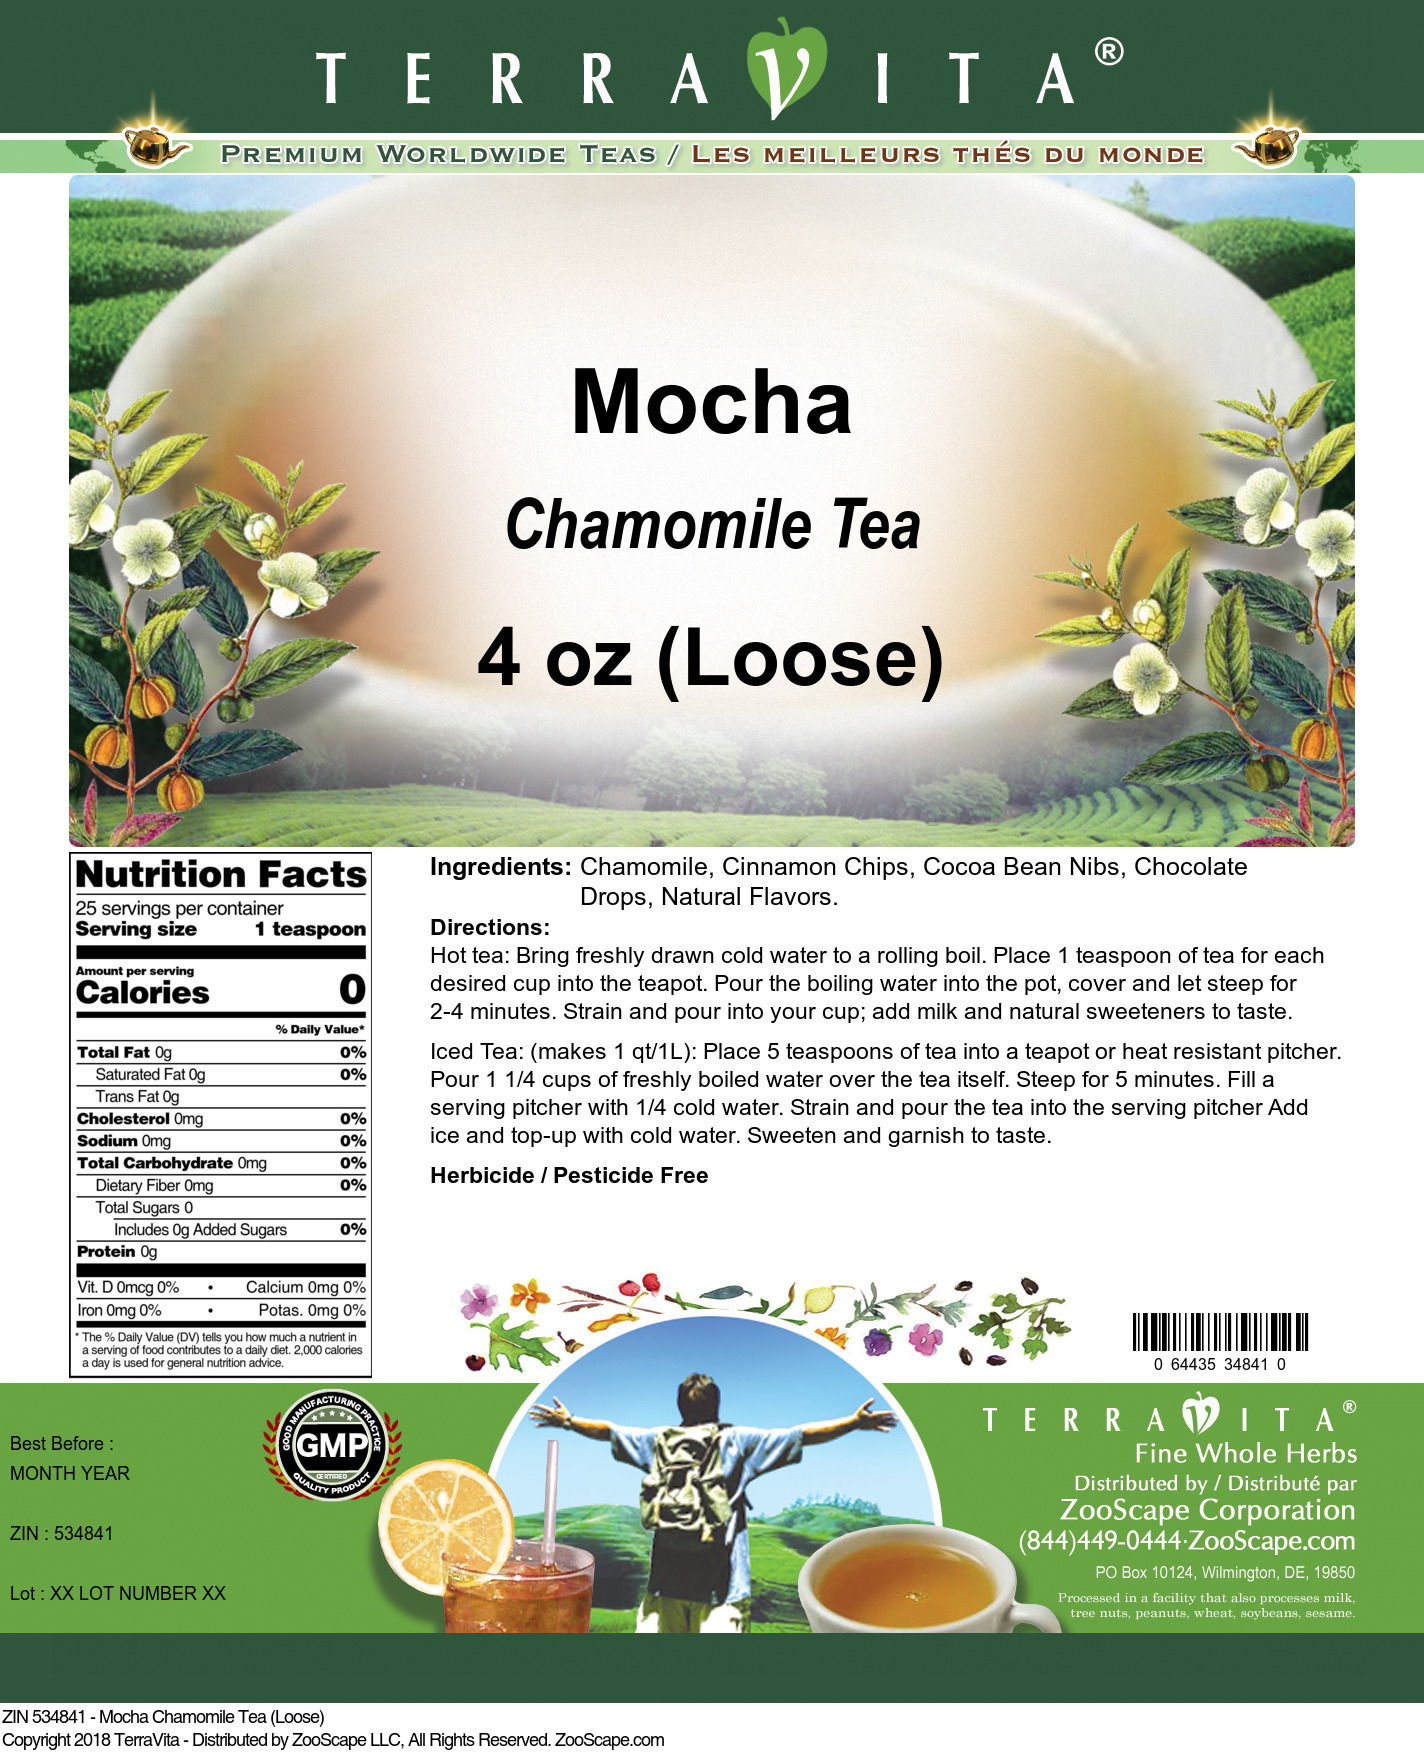 Mocha Chamomile Tea (Loose) - Label